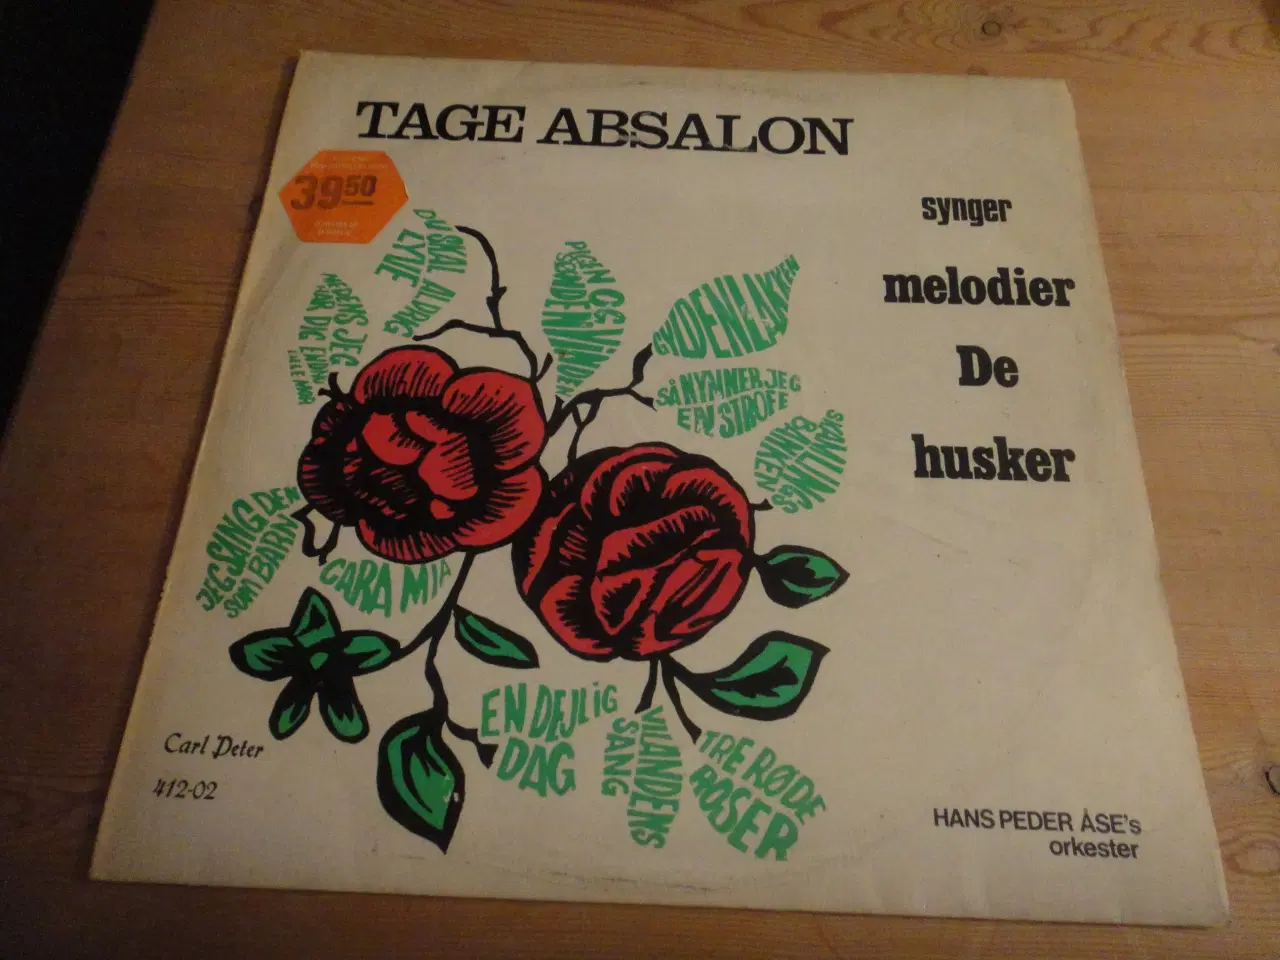 Billede 1 - LP - Tage Absalon synger melodier De husker 